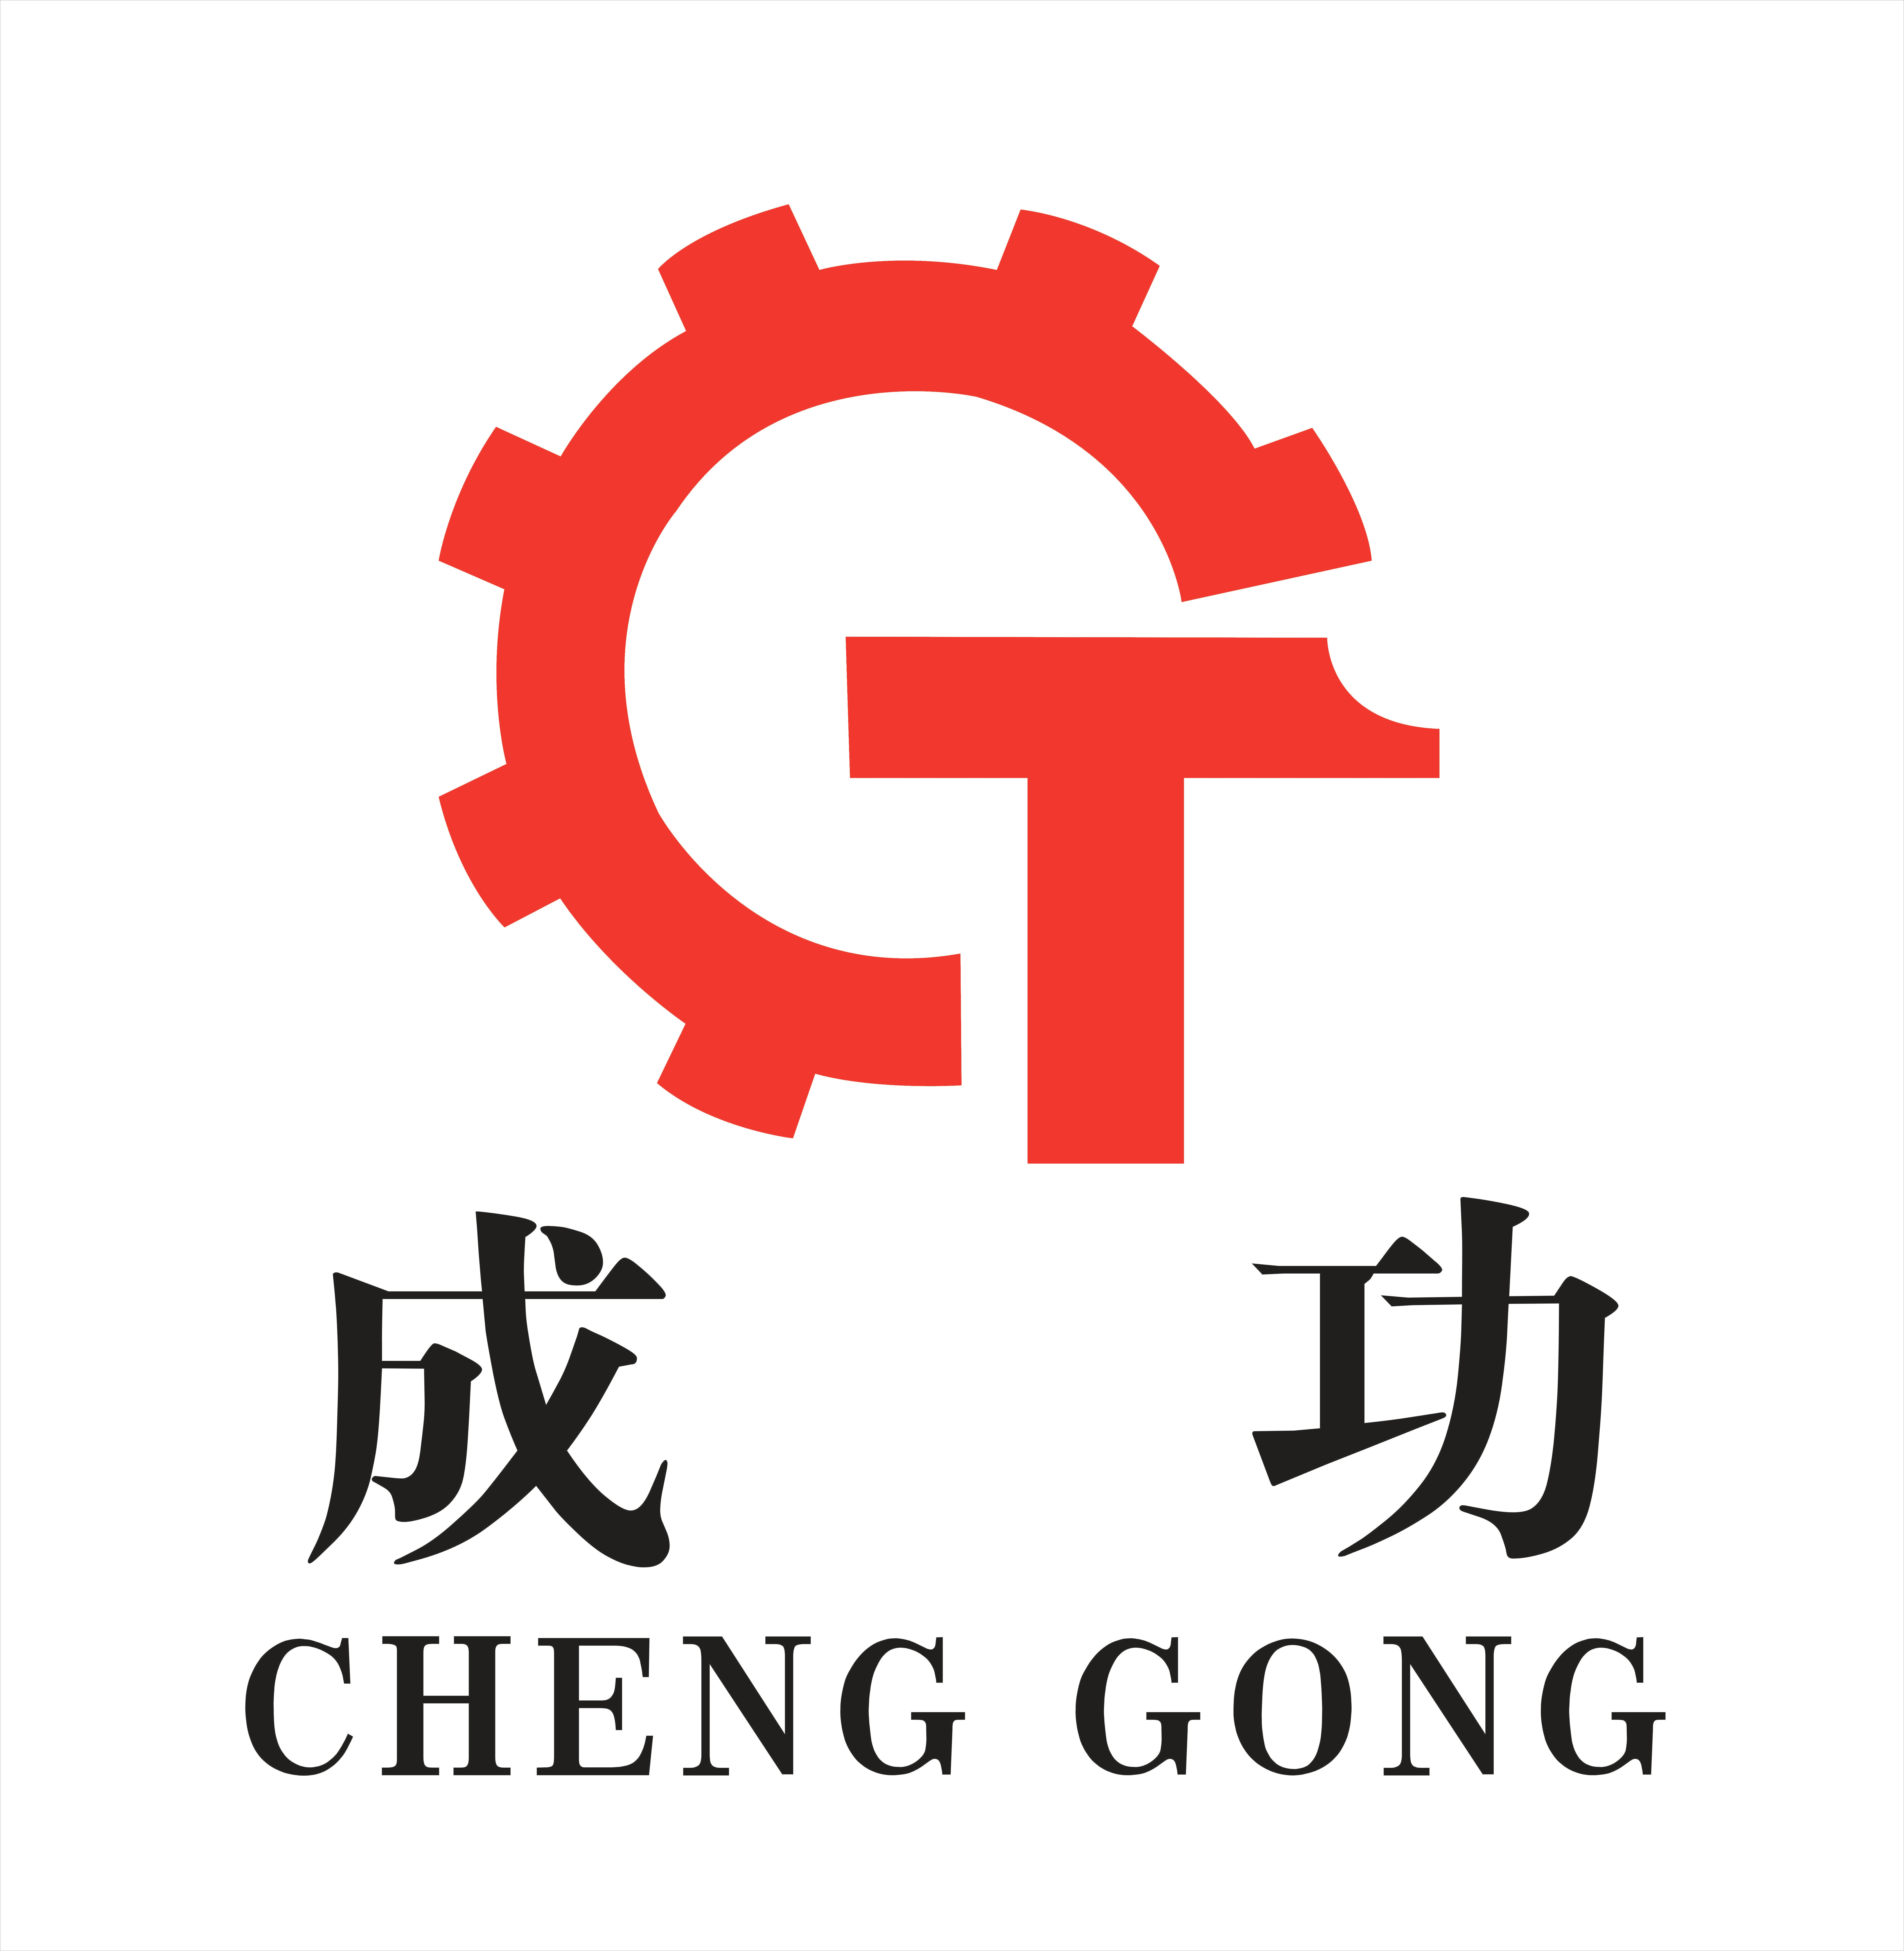 Lathe Logo - FUJIAN CHENGGONG MACHINE TOOL CO.,LTD. - vertical lathe, vertical ...